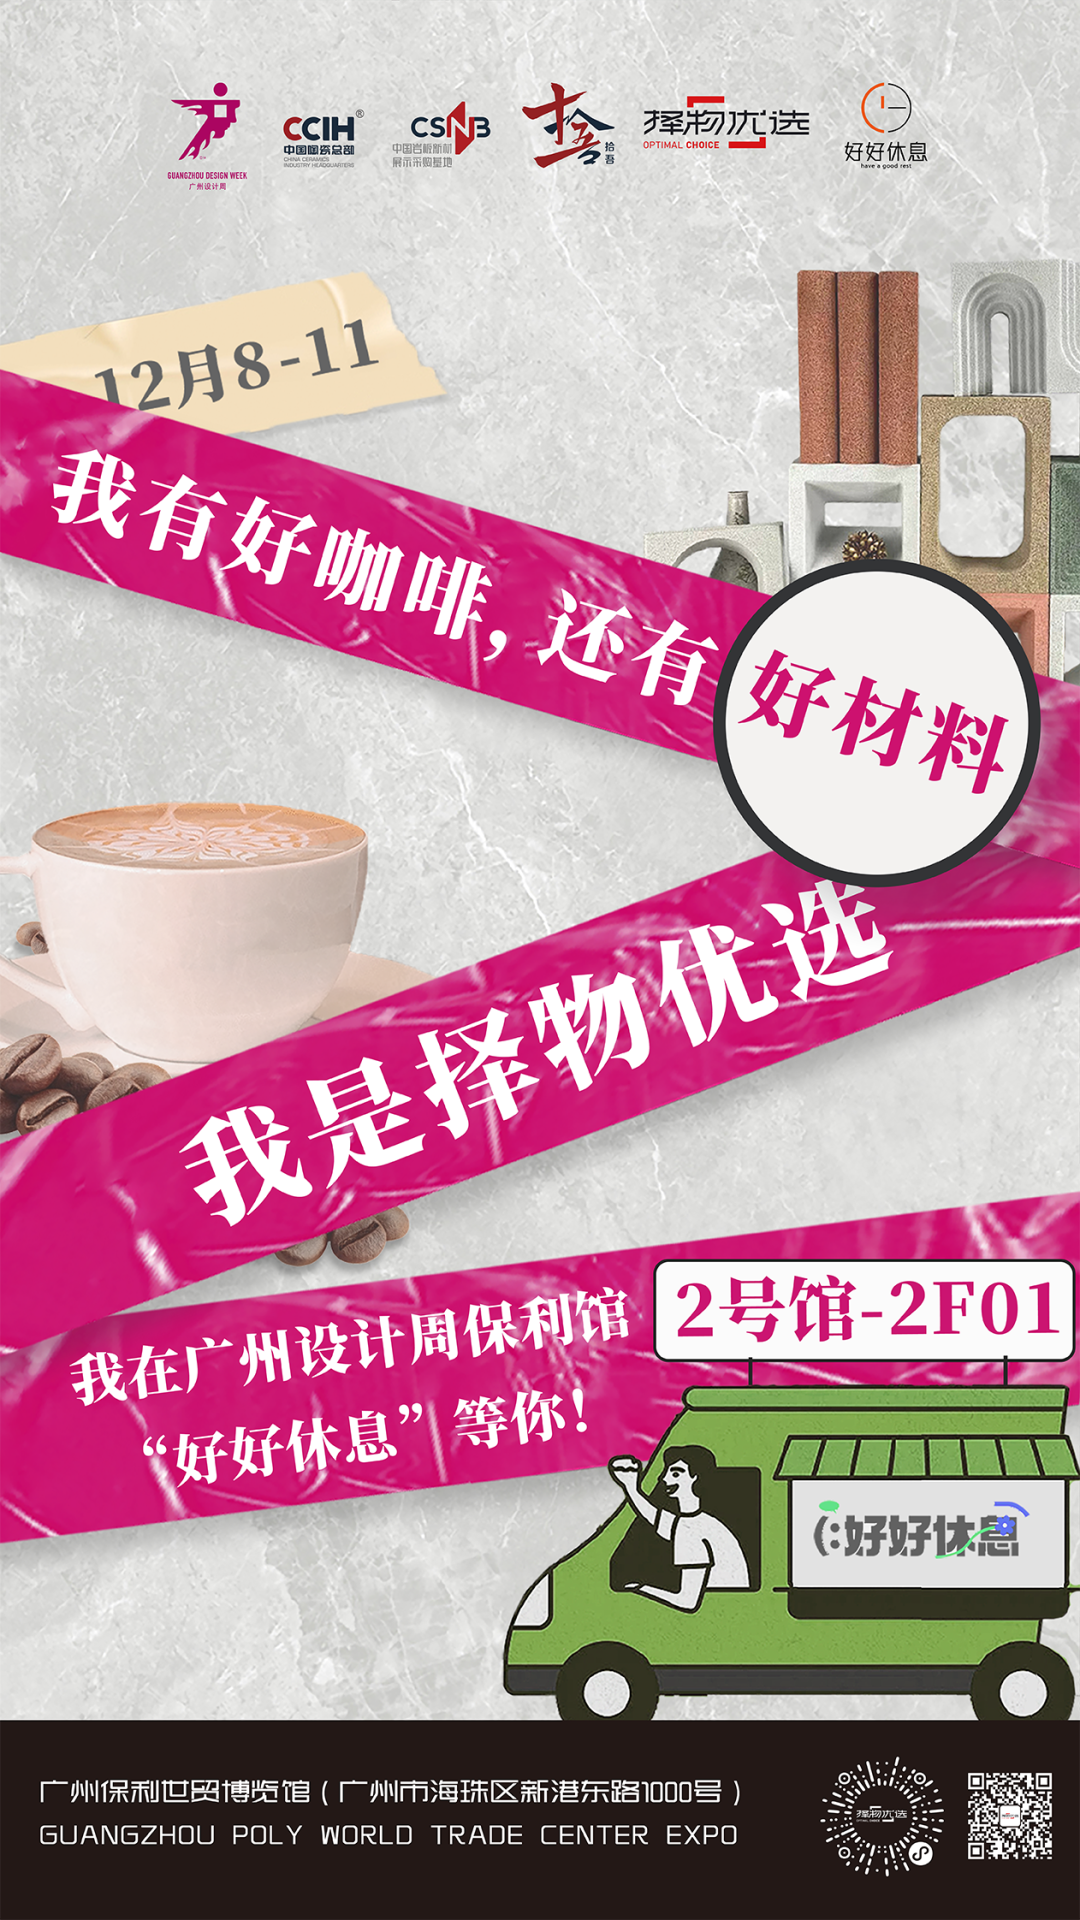 我有好咖啡，更有好材料！12.8-11广州设计周来2F01“好好休息”吧！